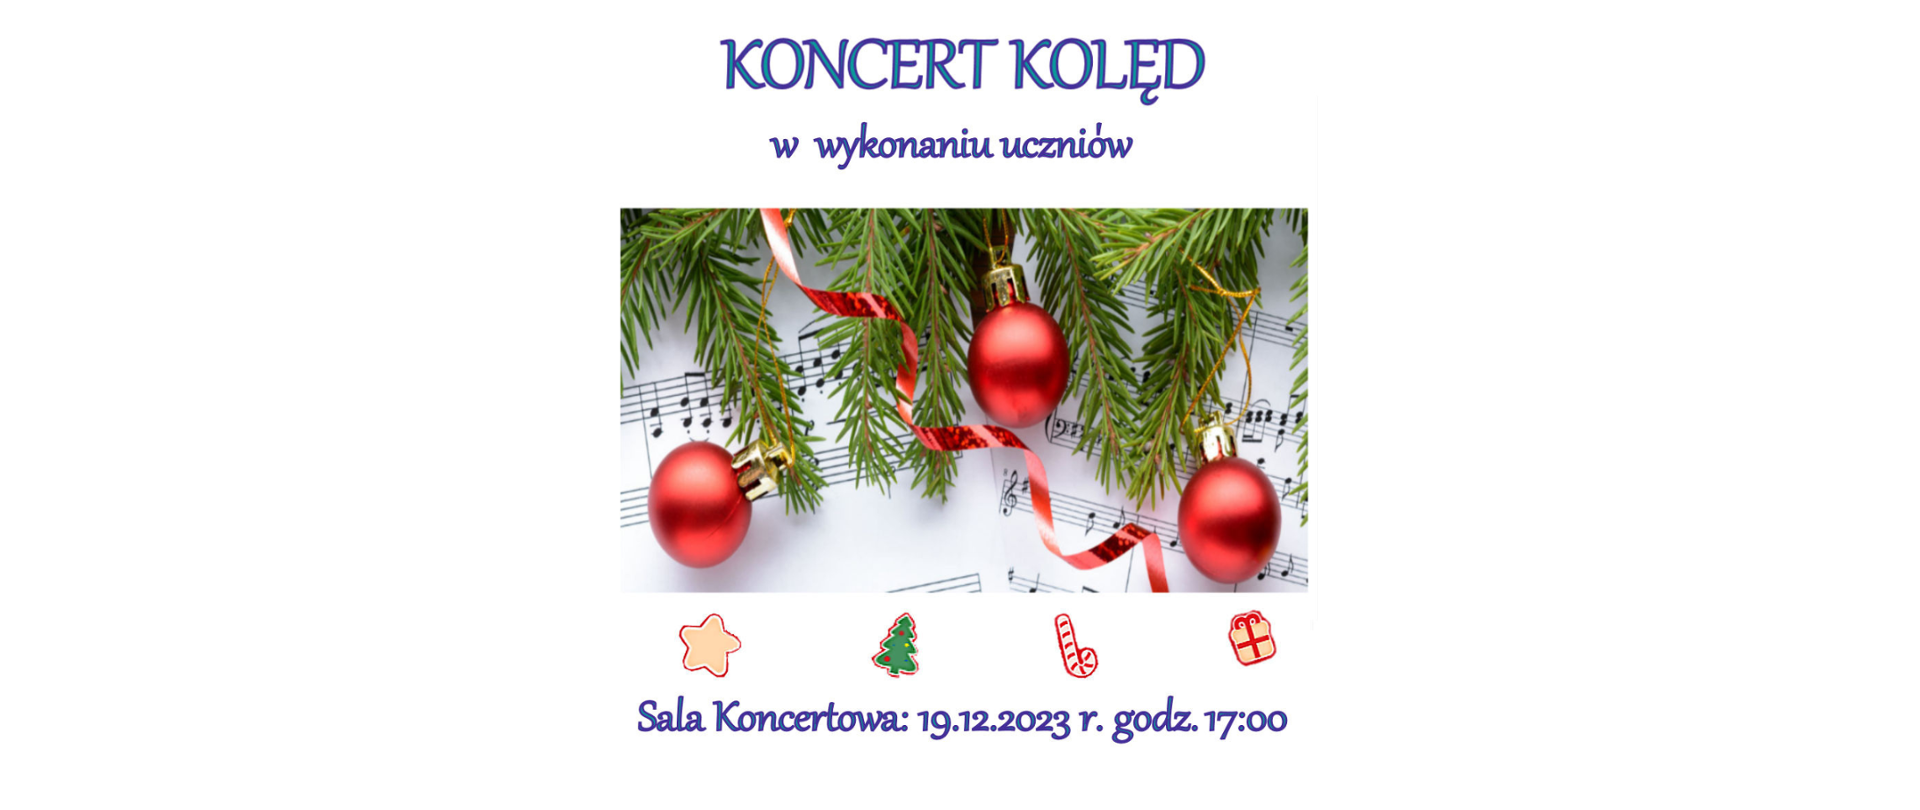 plakat przedstawia ozdoby bożonarodzeniowe na tle nut, oraz informację o koncercie kolęd w wykonaniu uczniów w dniu 19.12.23r. na sali koncertowej